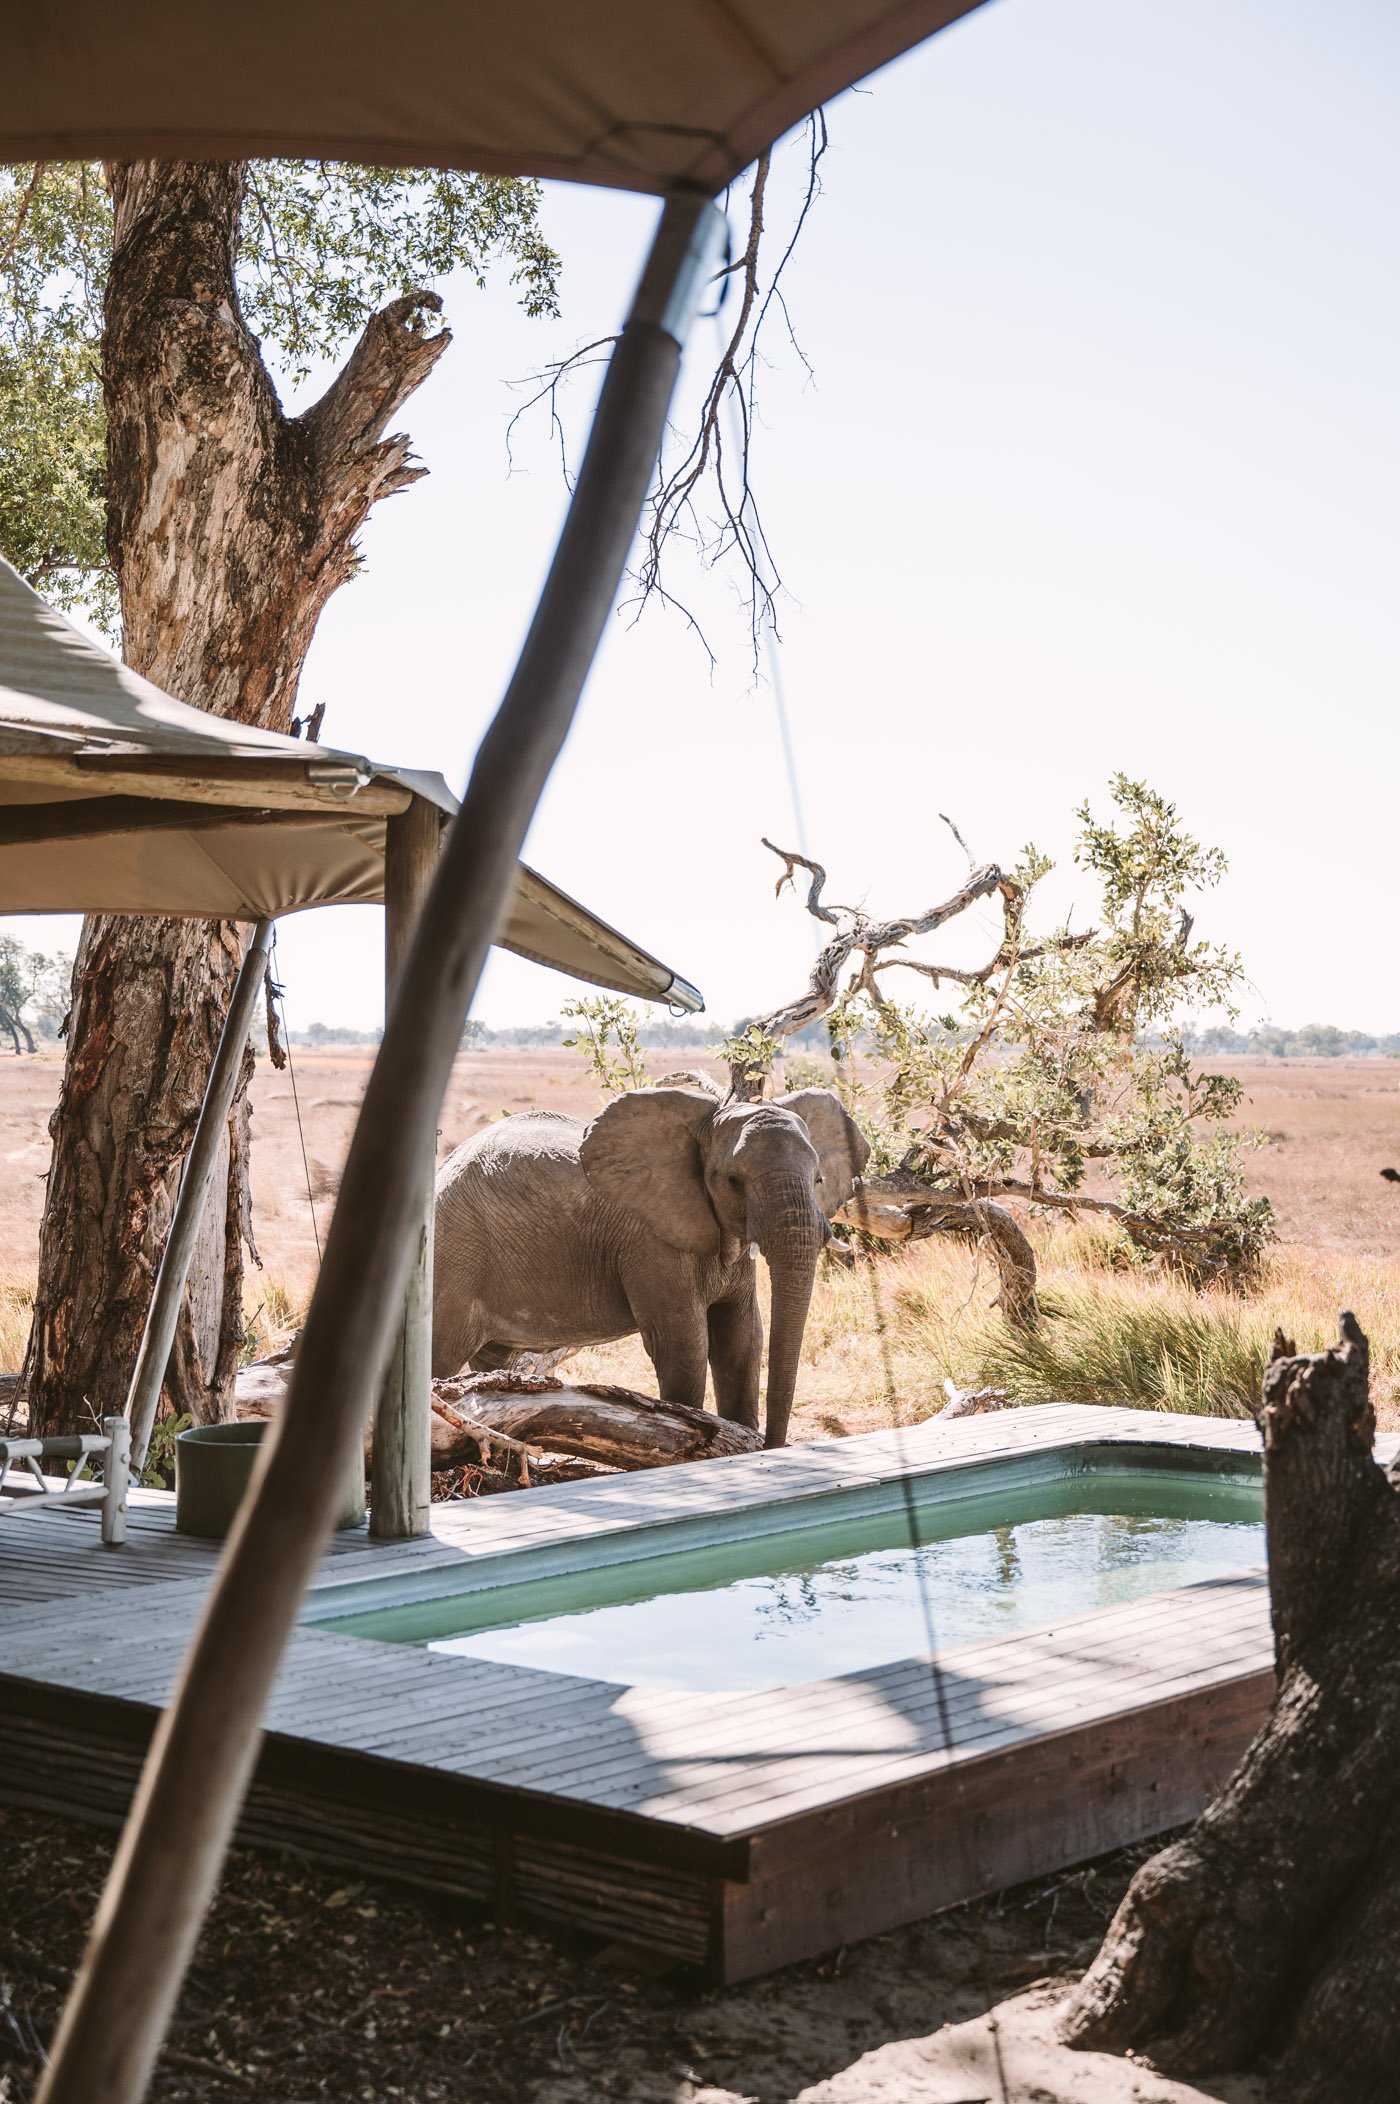 andBeyond Xaranna Okavango Delta Camp elephant by the pool